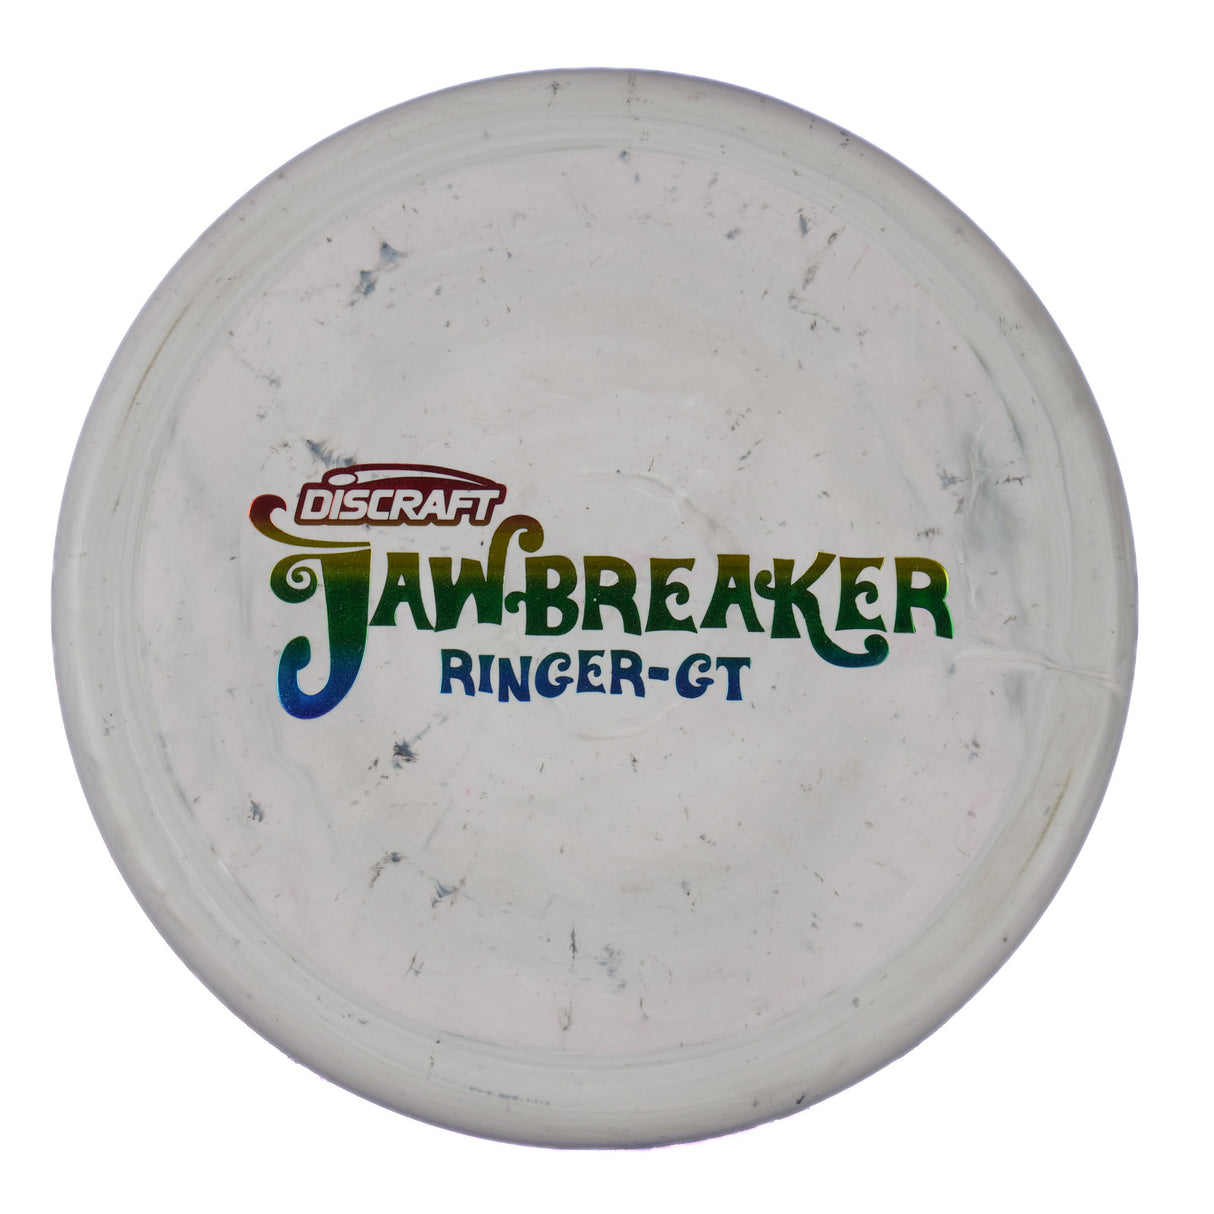 Discraft Ringer GT - Jawbreaker 170g | Style 0001